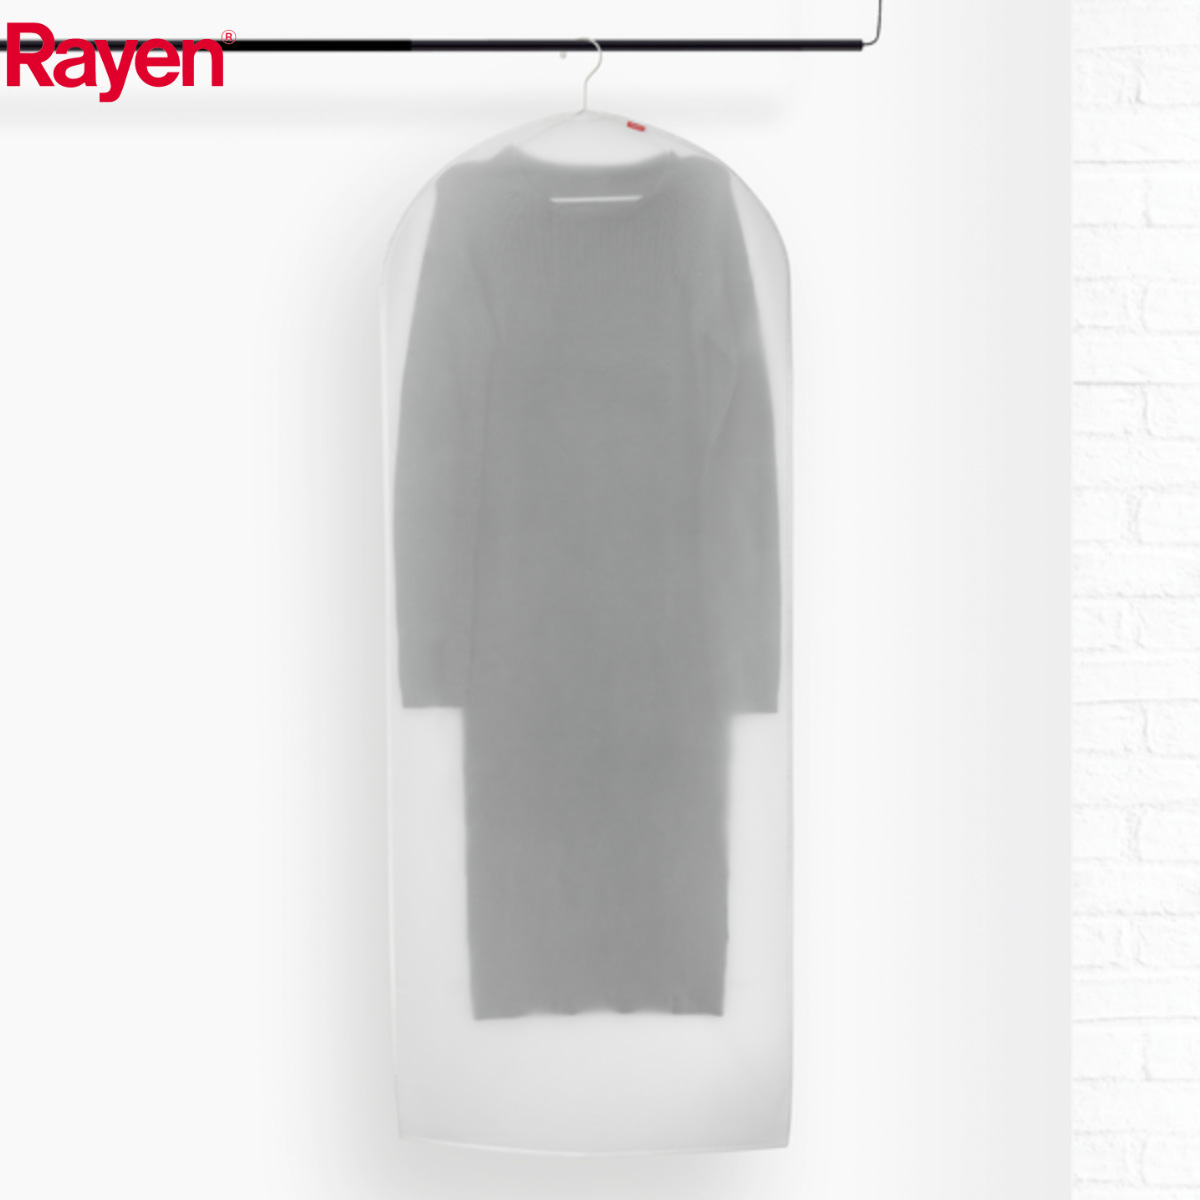 Rayen 洋服カバー L 半透明 ロング （ 衣類カバー 収納 衣類収納 洋服 衣類 カバー 衣類収納袋 収納袋 スーツ ジャケット ワンピース 用